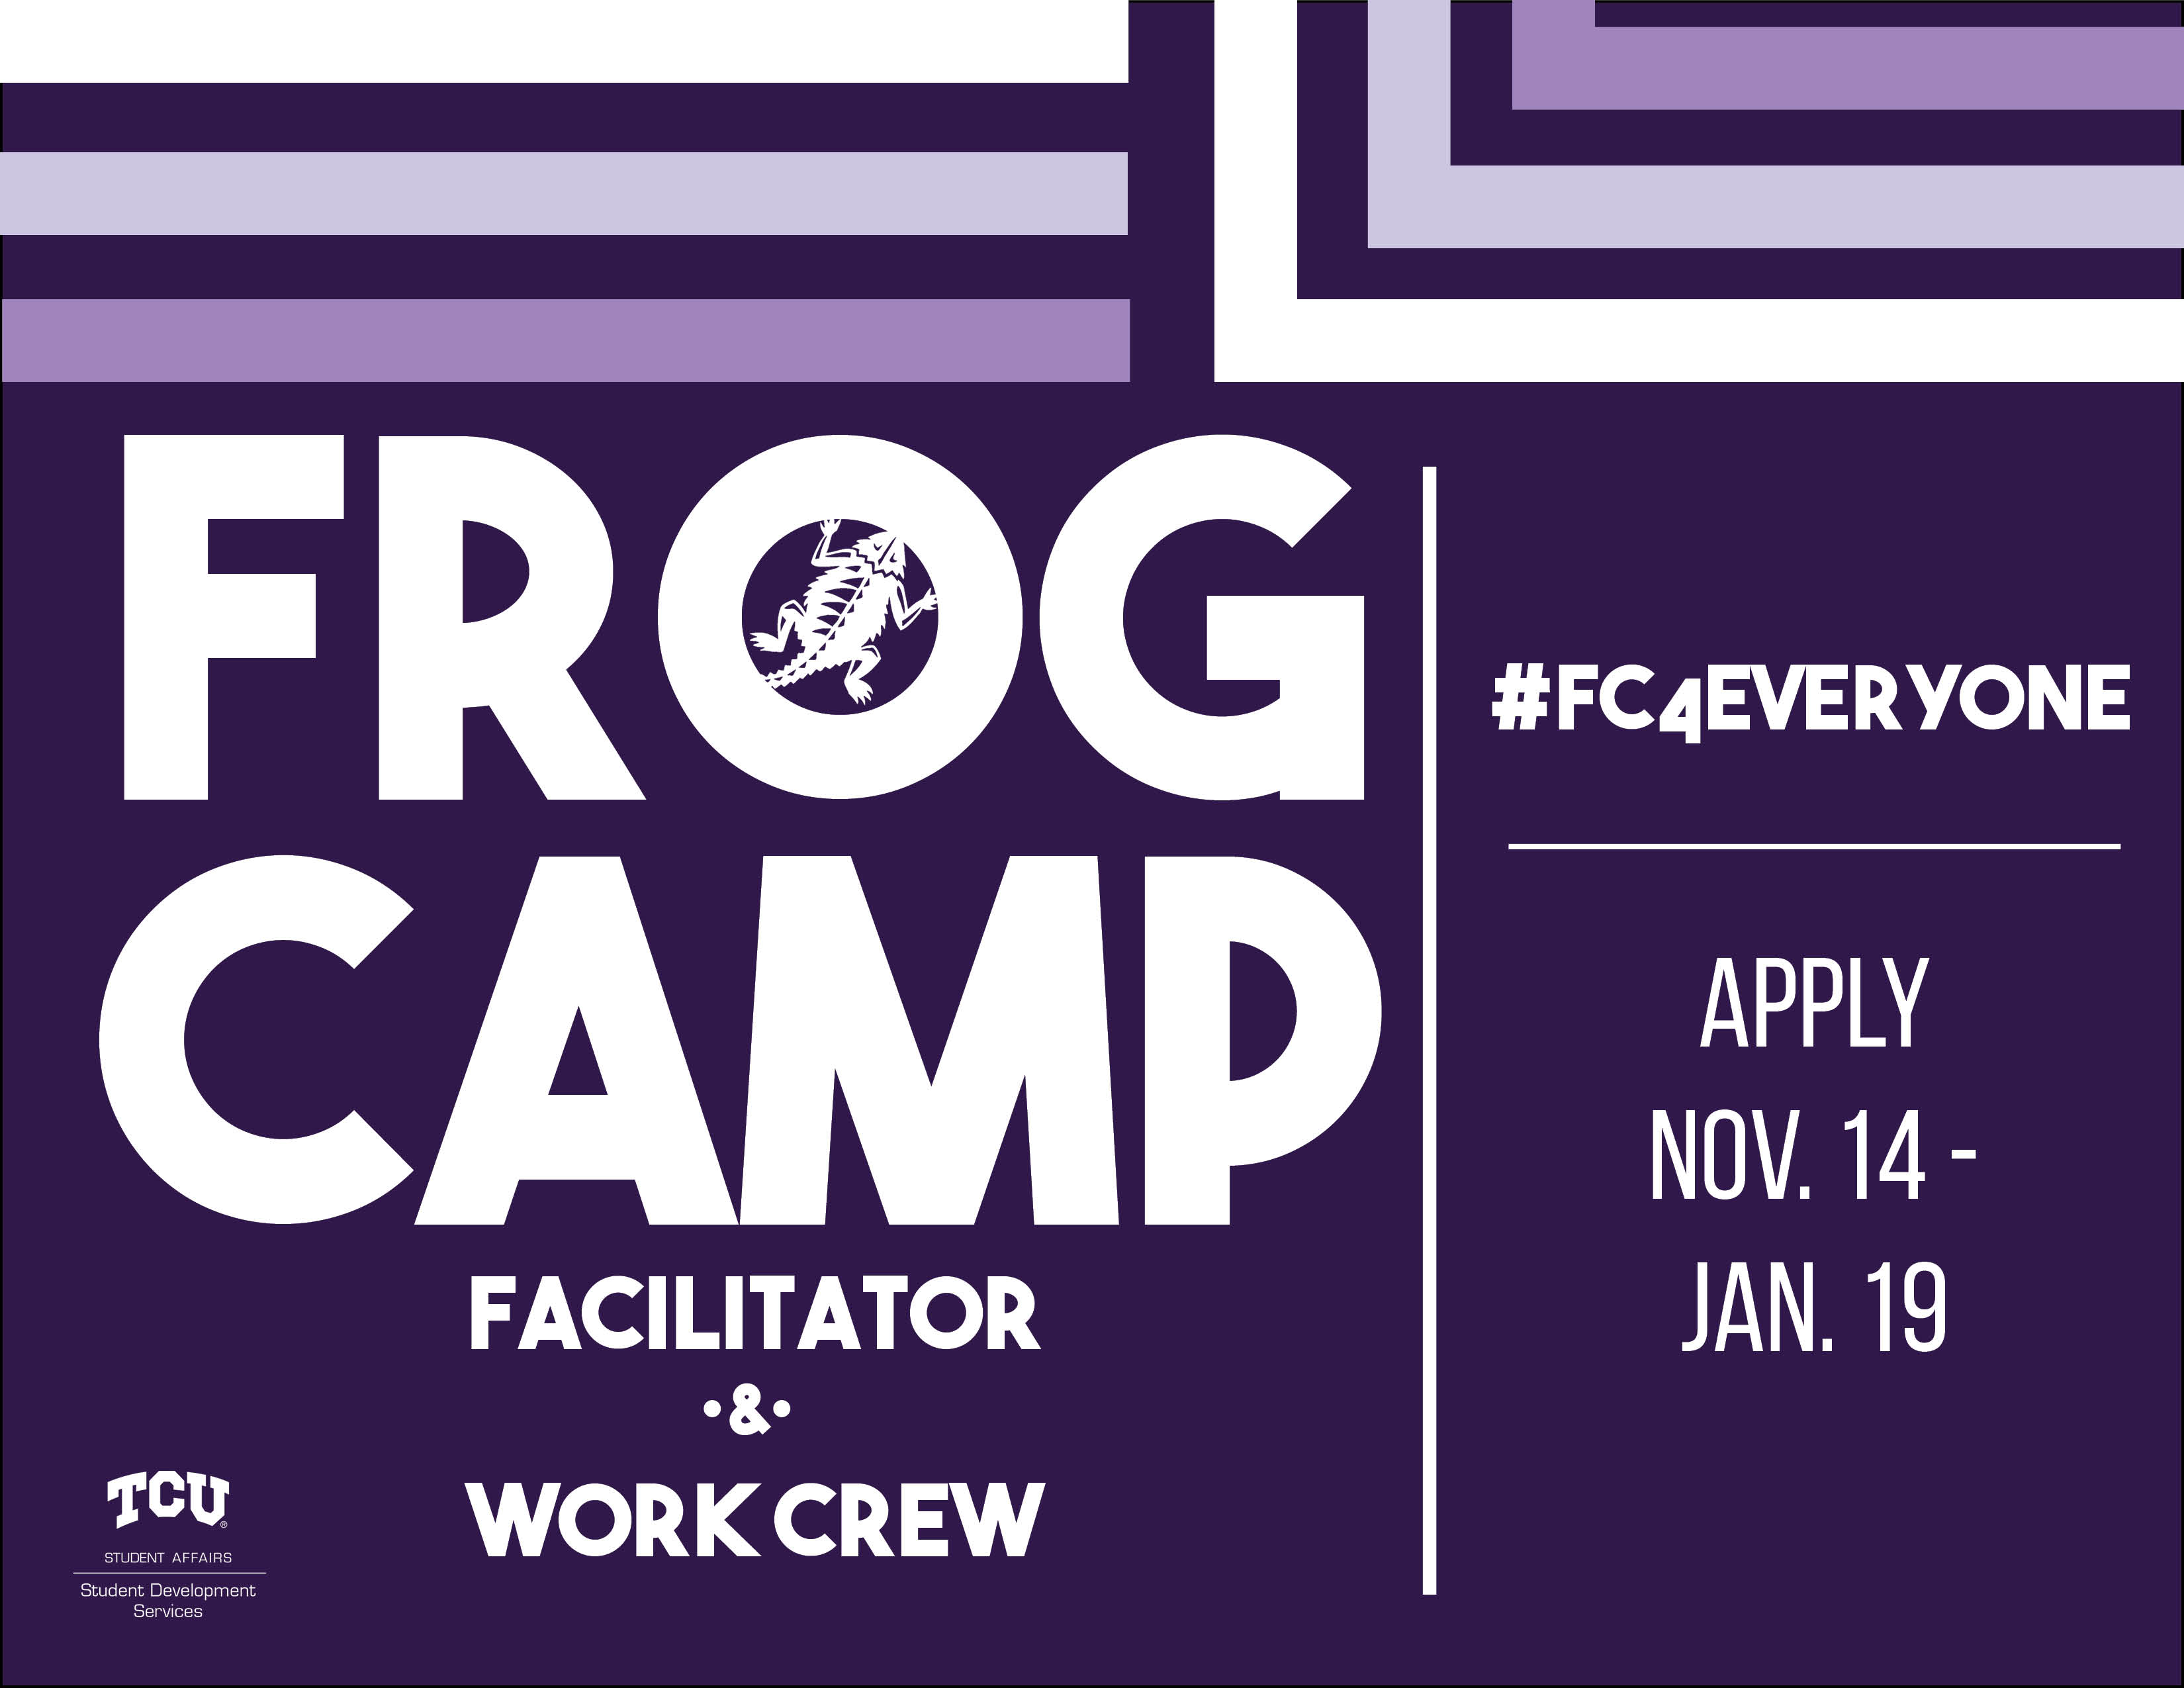 Frog_Camp_Facilitator